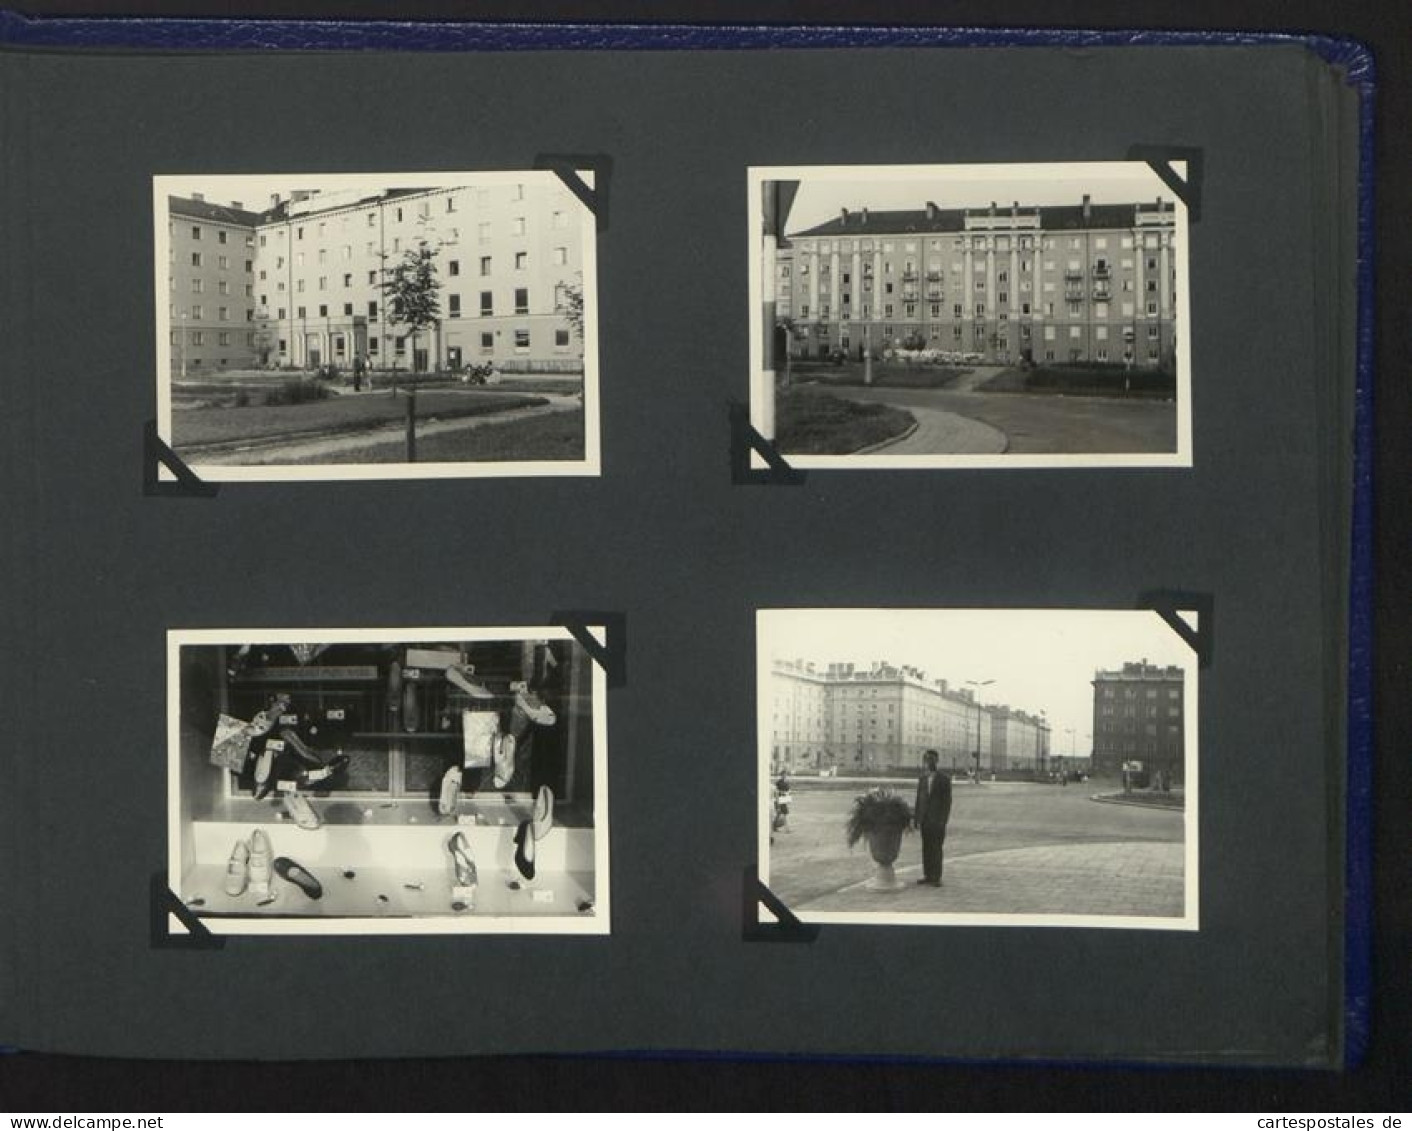 Fotoalbum mit 132 Fotografien, Deutscher Praktikant in der Tschechoslowakei CSSR 1960, Ostrava, Prag 